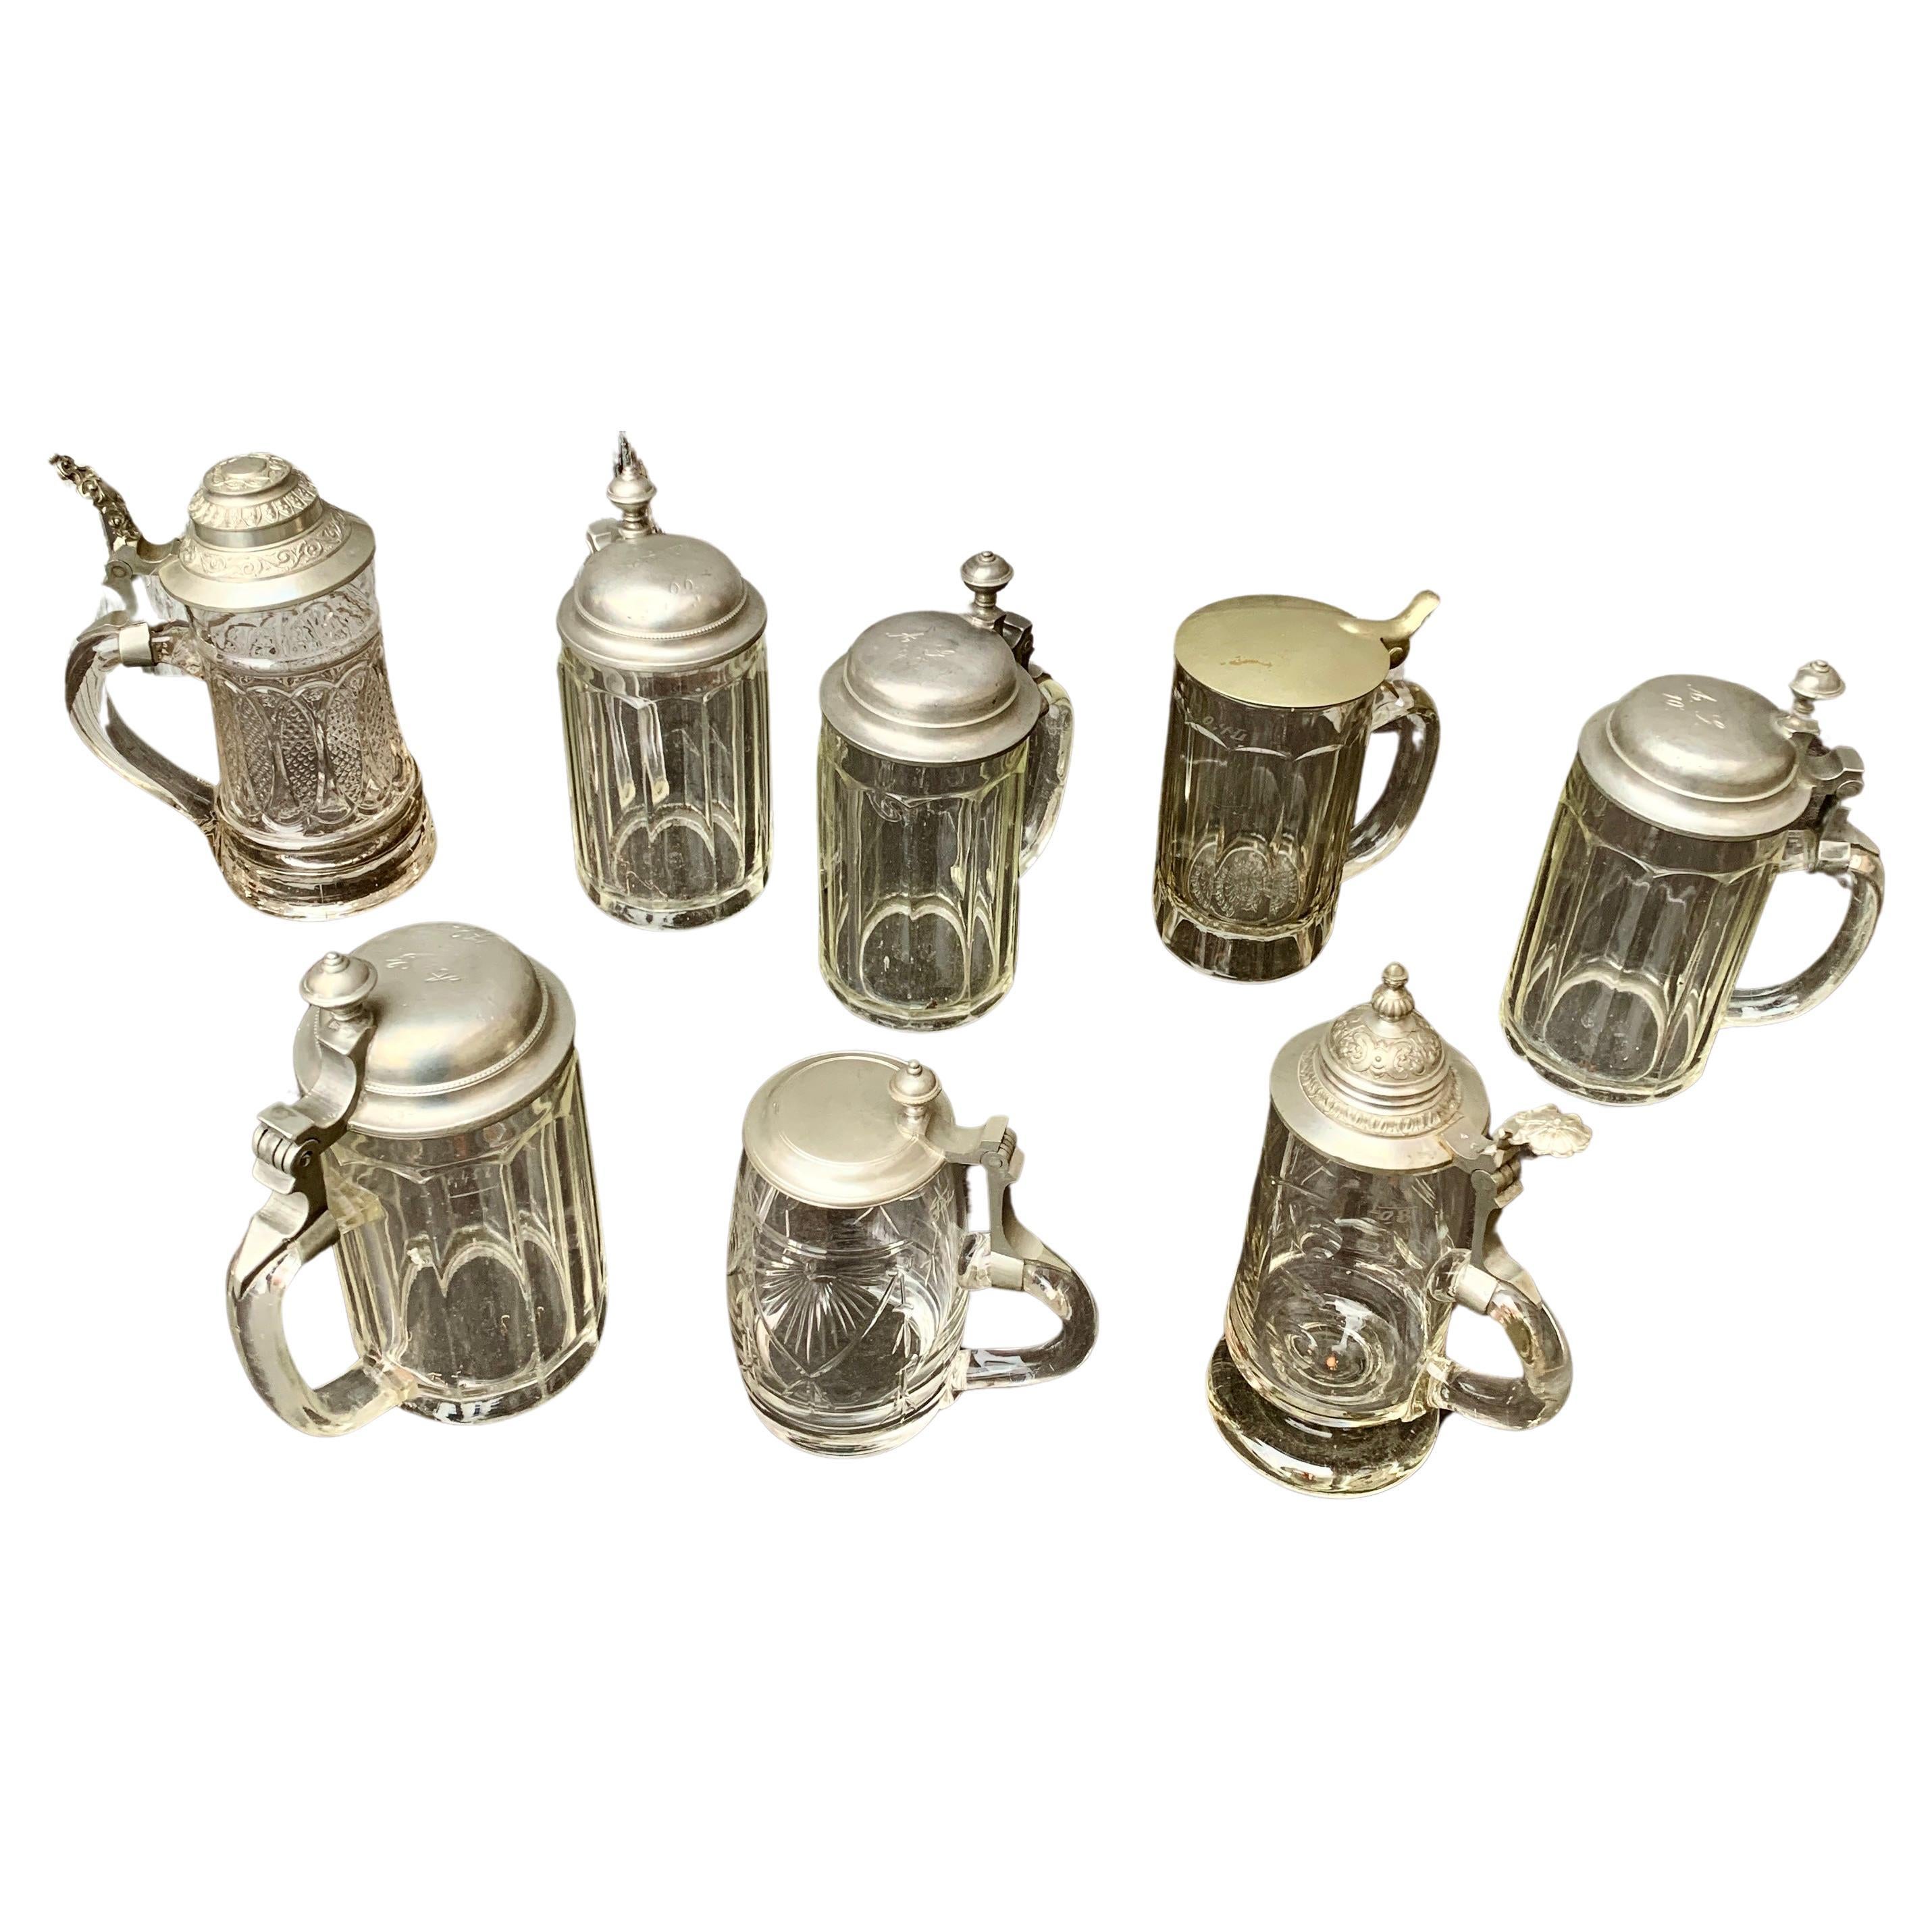 Une collection de 8 pièces de choppes en verre avec couvercles en métal de la fin du 19ème siècle et du début du 20ème siècle. Ils ont probablement été utilisés pour boire de la bière. Quatre d'entre elles du même modèle ont un numéro imprimé dans